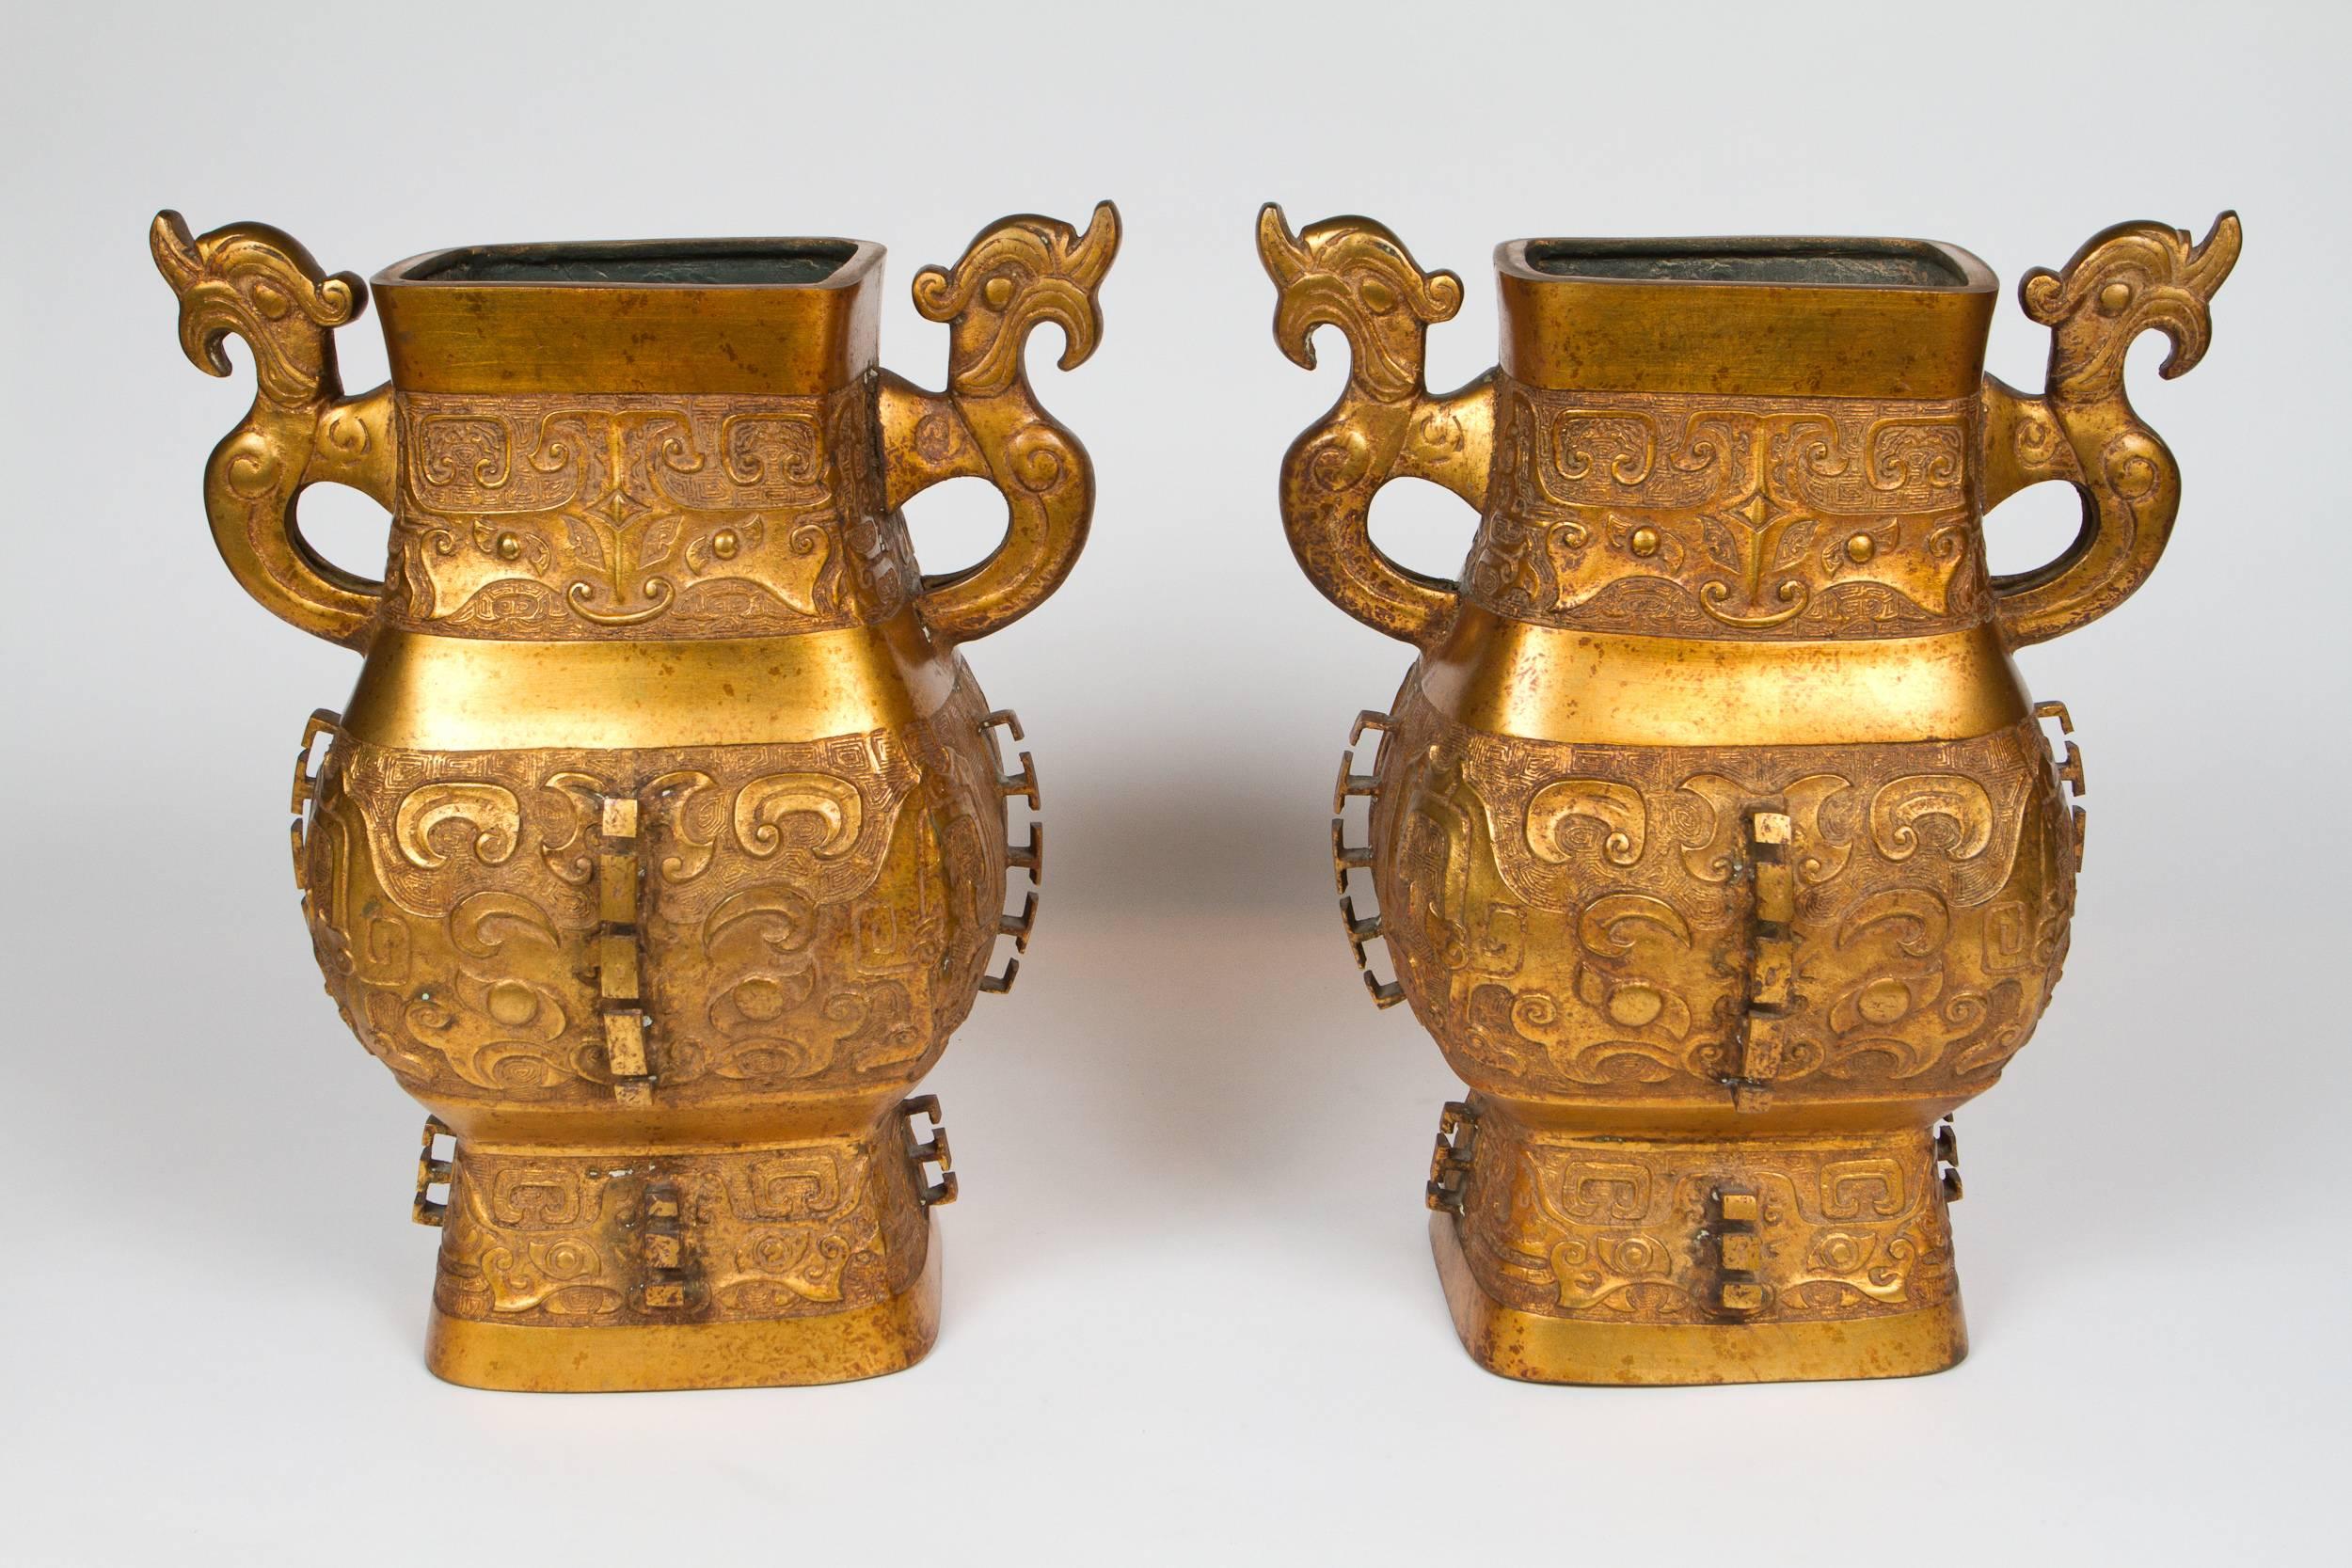 Impressionnante paire de vases chinois archaïques en bronze doré. Parfaite échelle pour l'utilisation de lampes, déjà percées à cet effet.